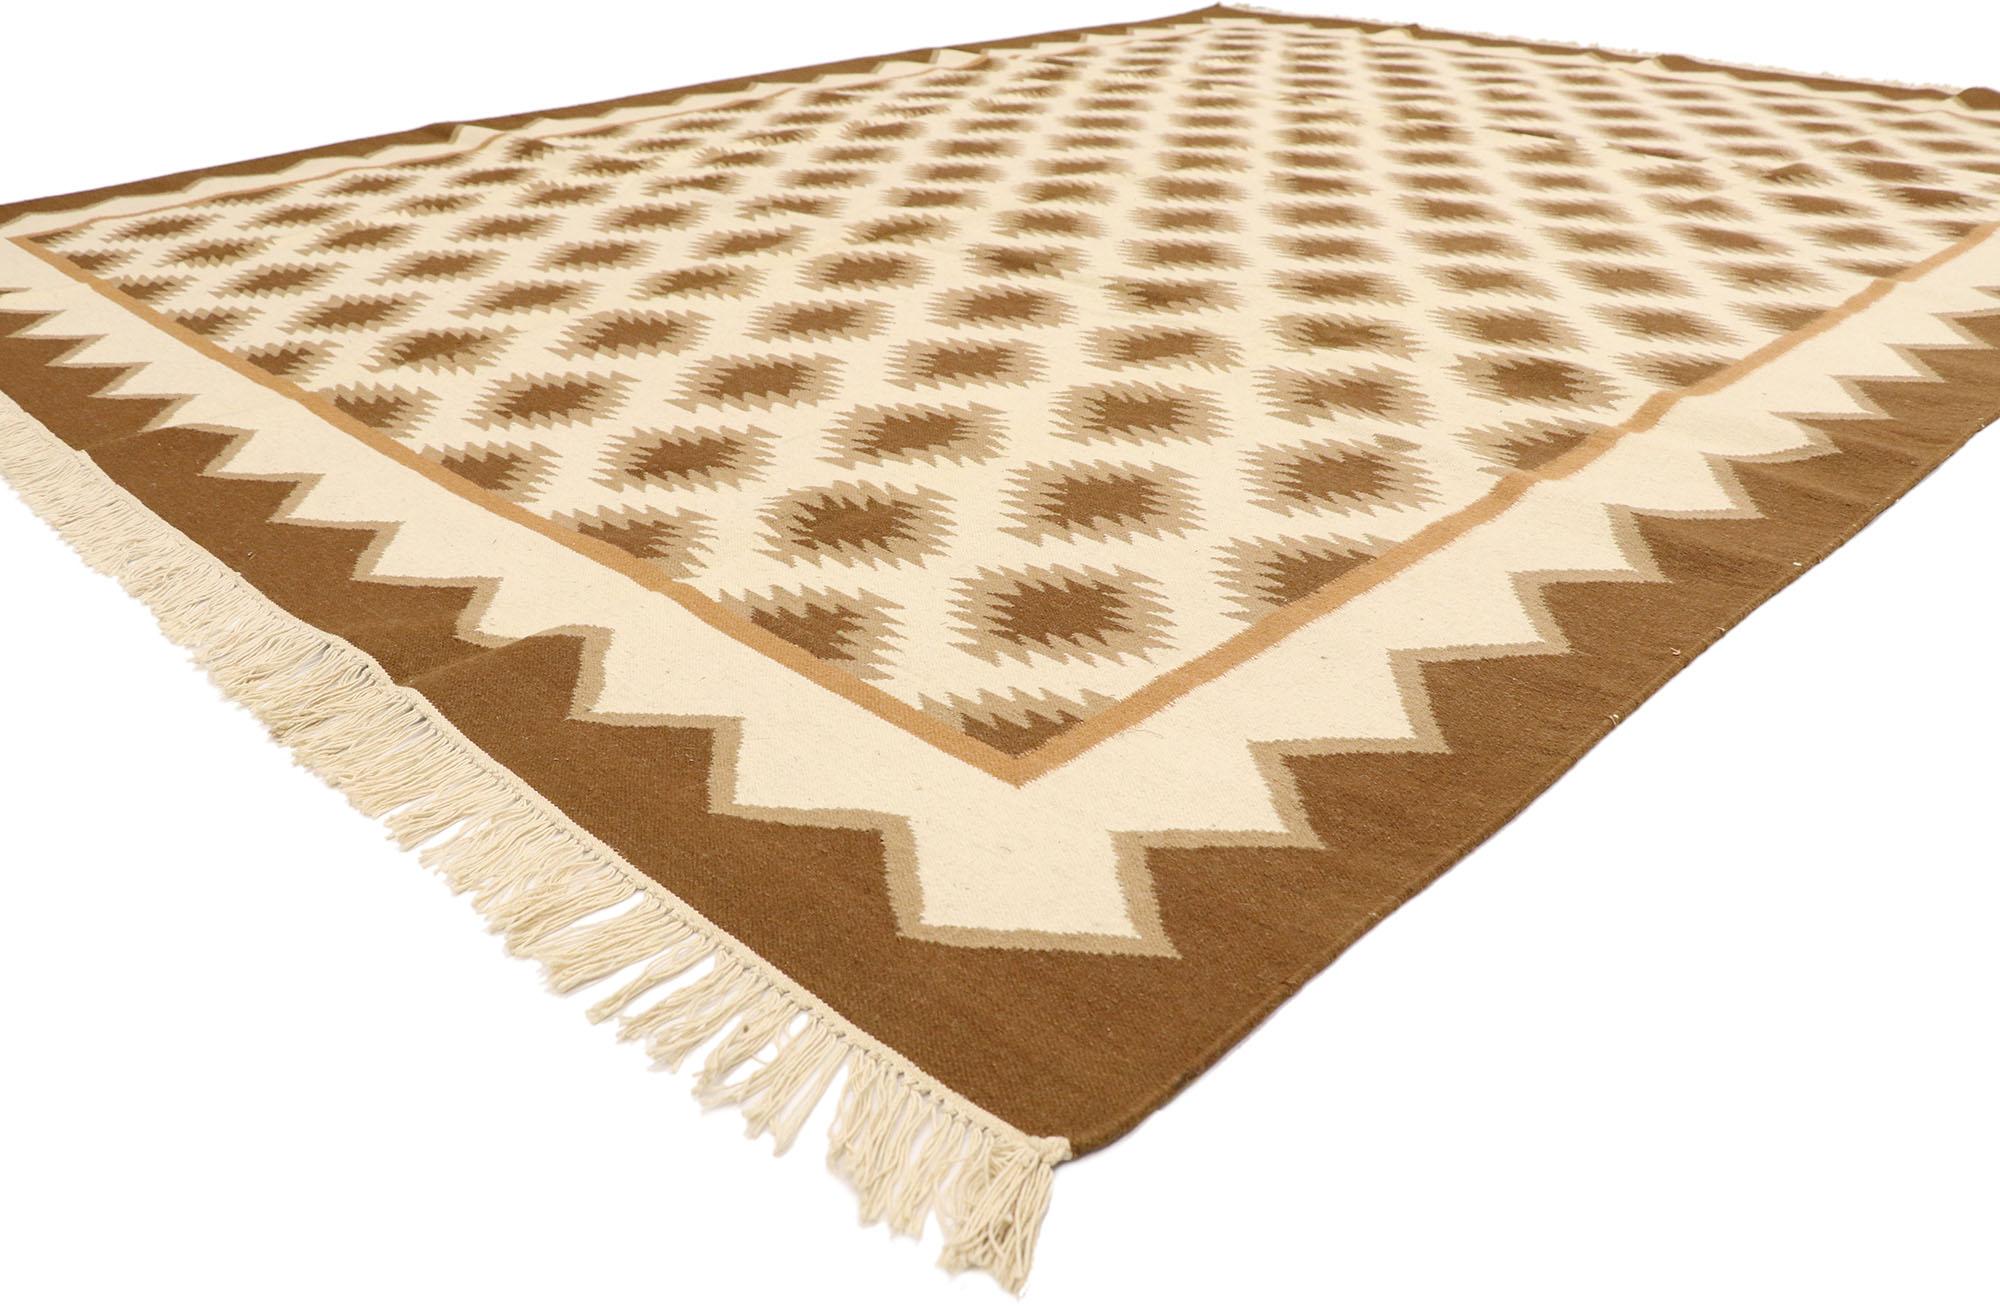 77964 Rumänischer Kelim-Teppich im modernen Stil der Jahrhundertmitte 09'01 x 12'00. Dieser handgewebte rumänische Kelimteppich aus Wolle ist warm und einladend und zeichnet sich durch ein sich überall wiederholendes geometrisches Muster aus. In